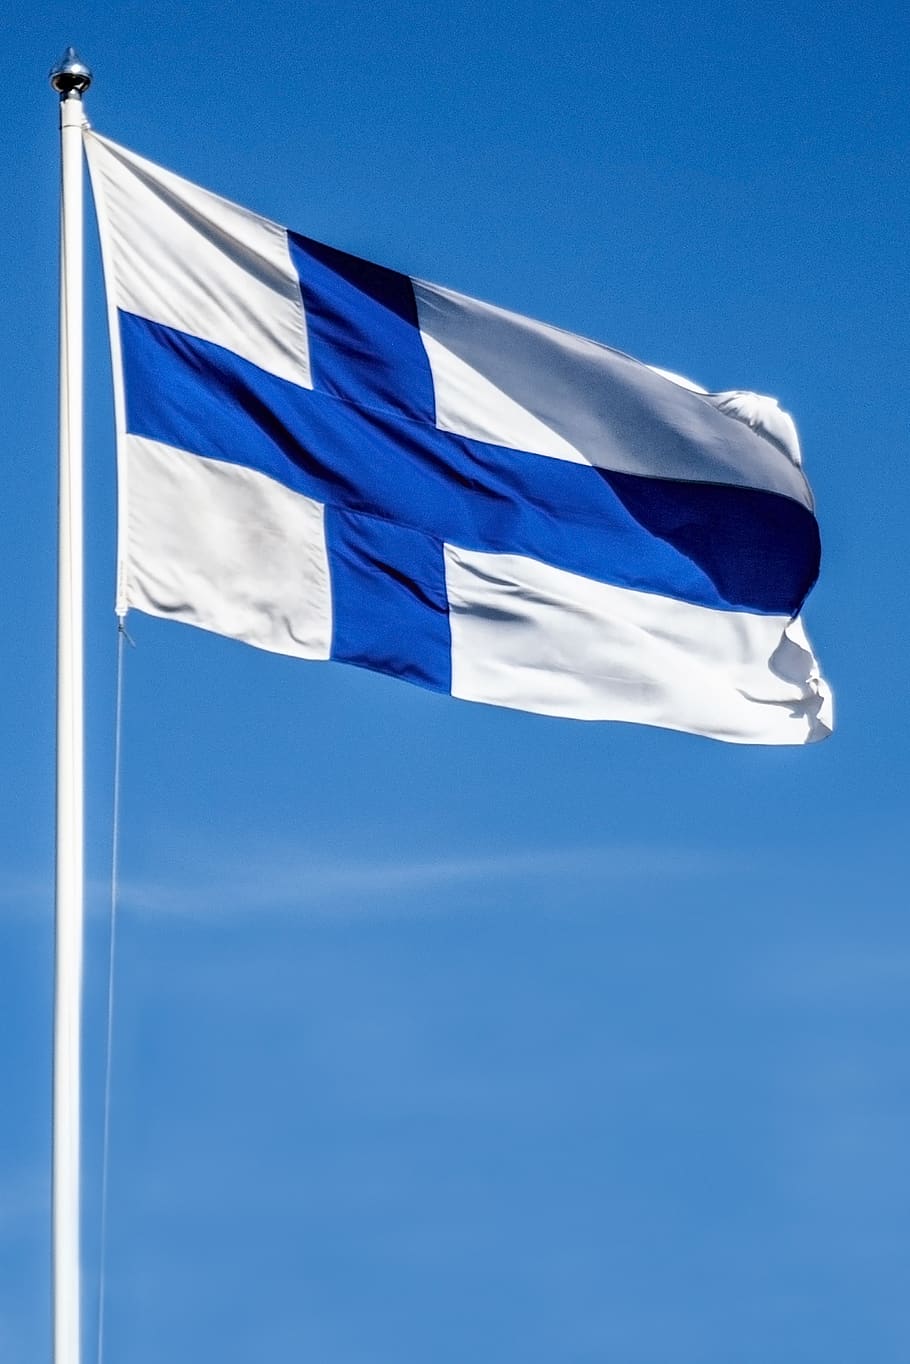 bandera de finlandia, bandera, bandera de la cruz azul, entradas, azul y blanco, azul, día de la independencia, patriotismo, cielo, viento